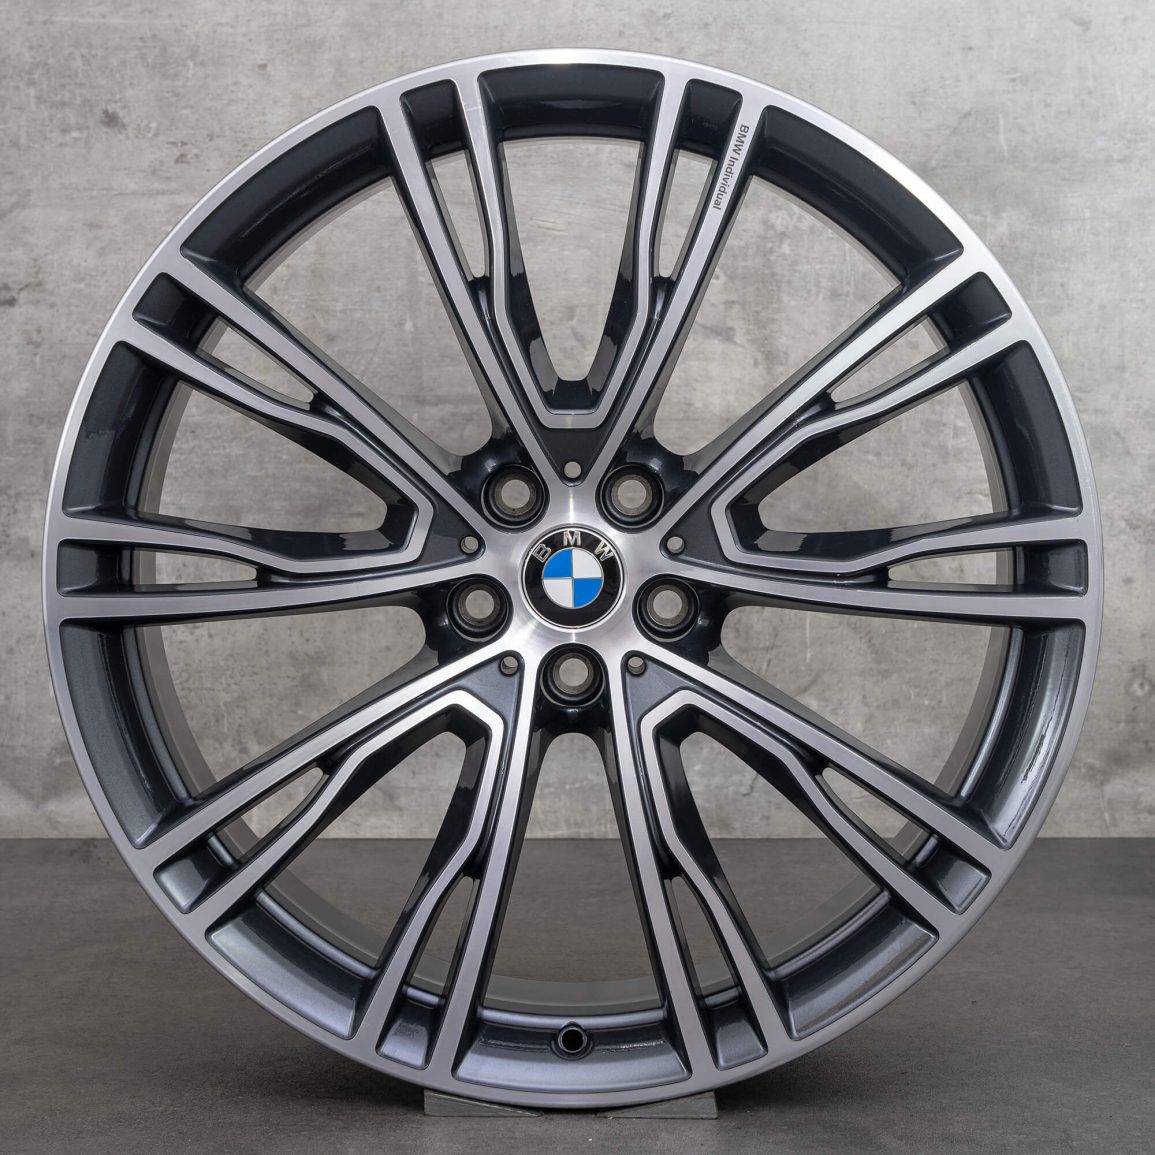 Für eine stärkere Individualisierung: Original BMW Zubehör für den X3